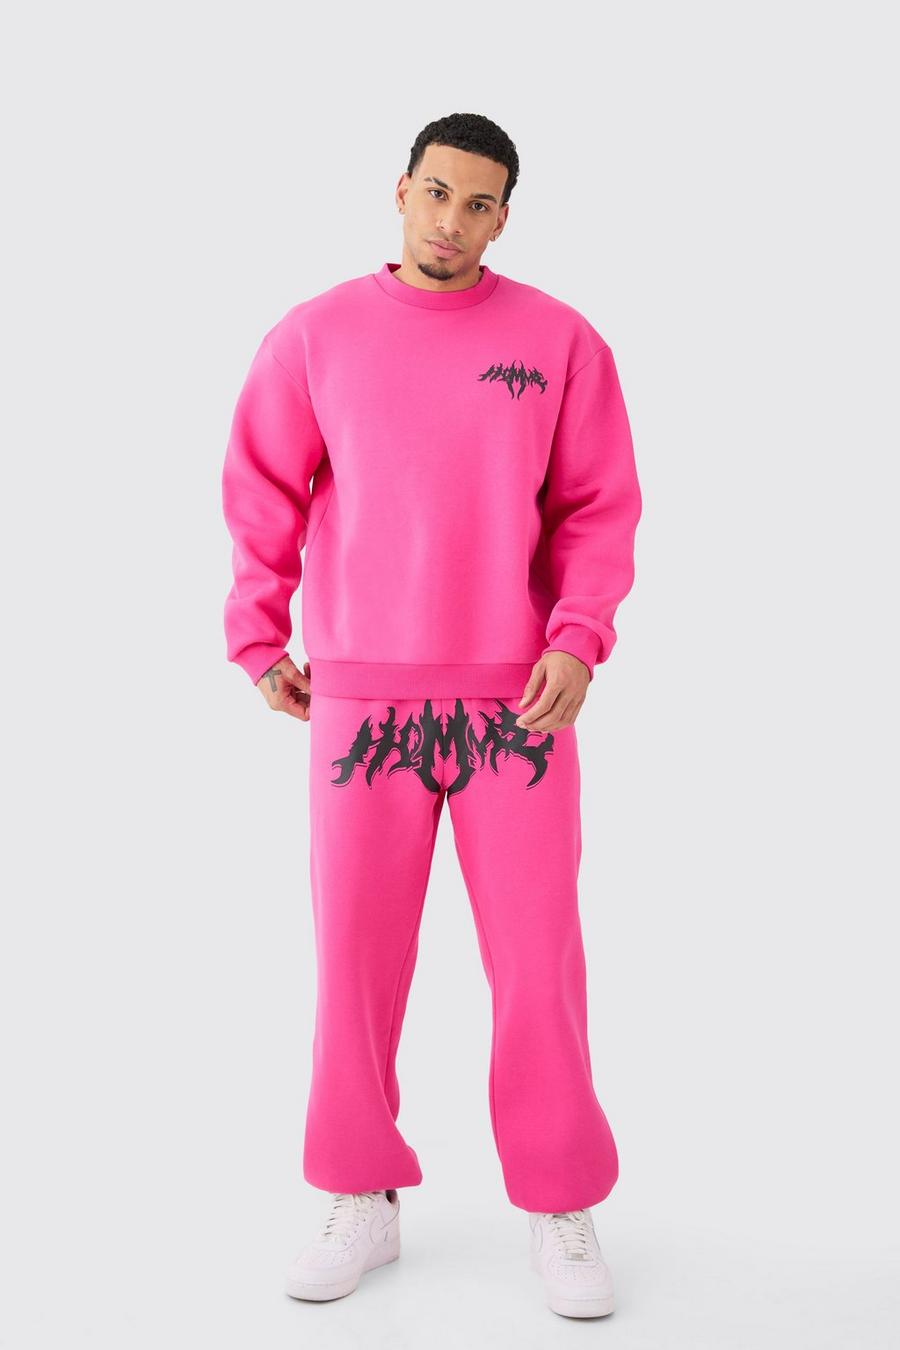 Pink Oversized Homme Gothic Sweatshirt Tracksuit